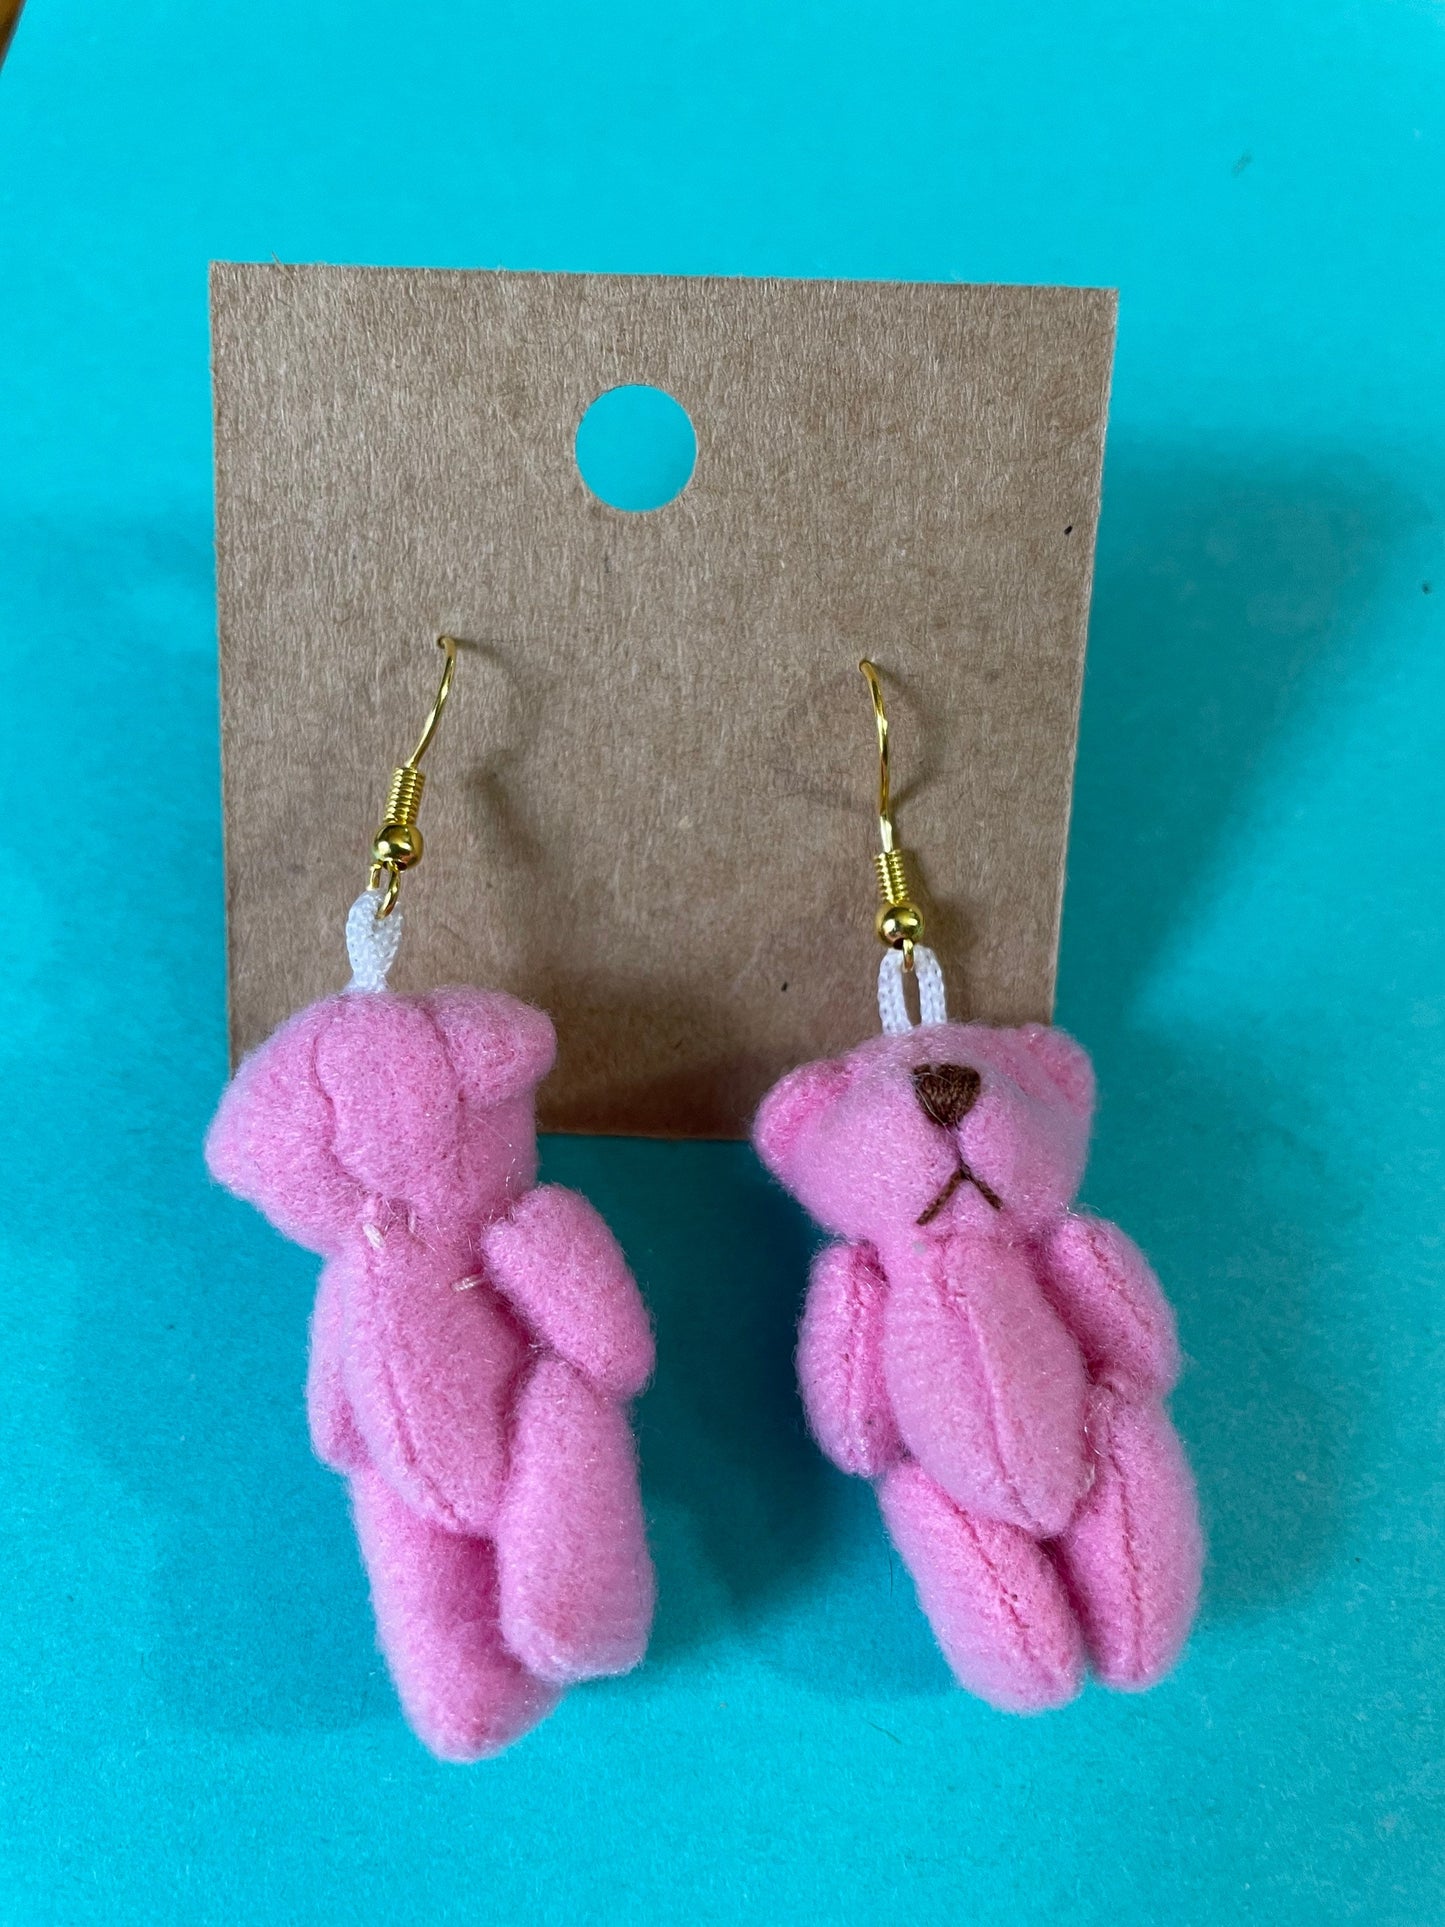 Sweet Teddy Bear earrings dangle earrings blue, brown, lavender, tan and pink earrings